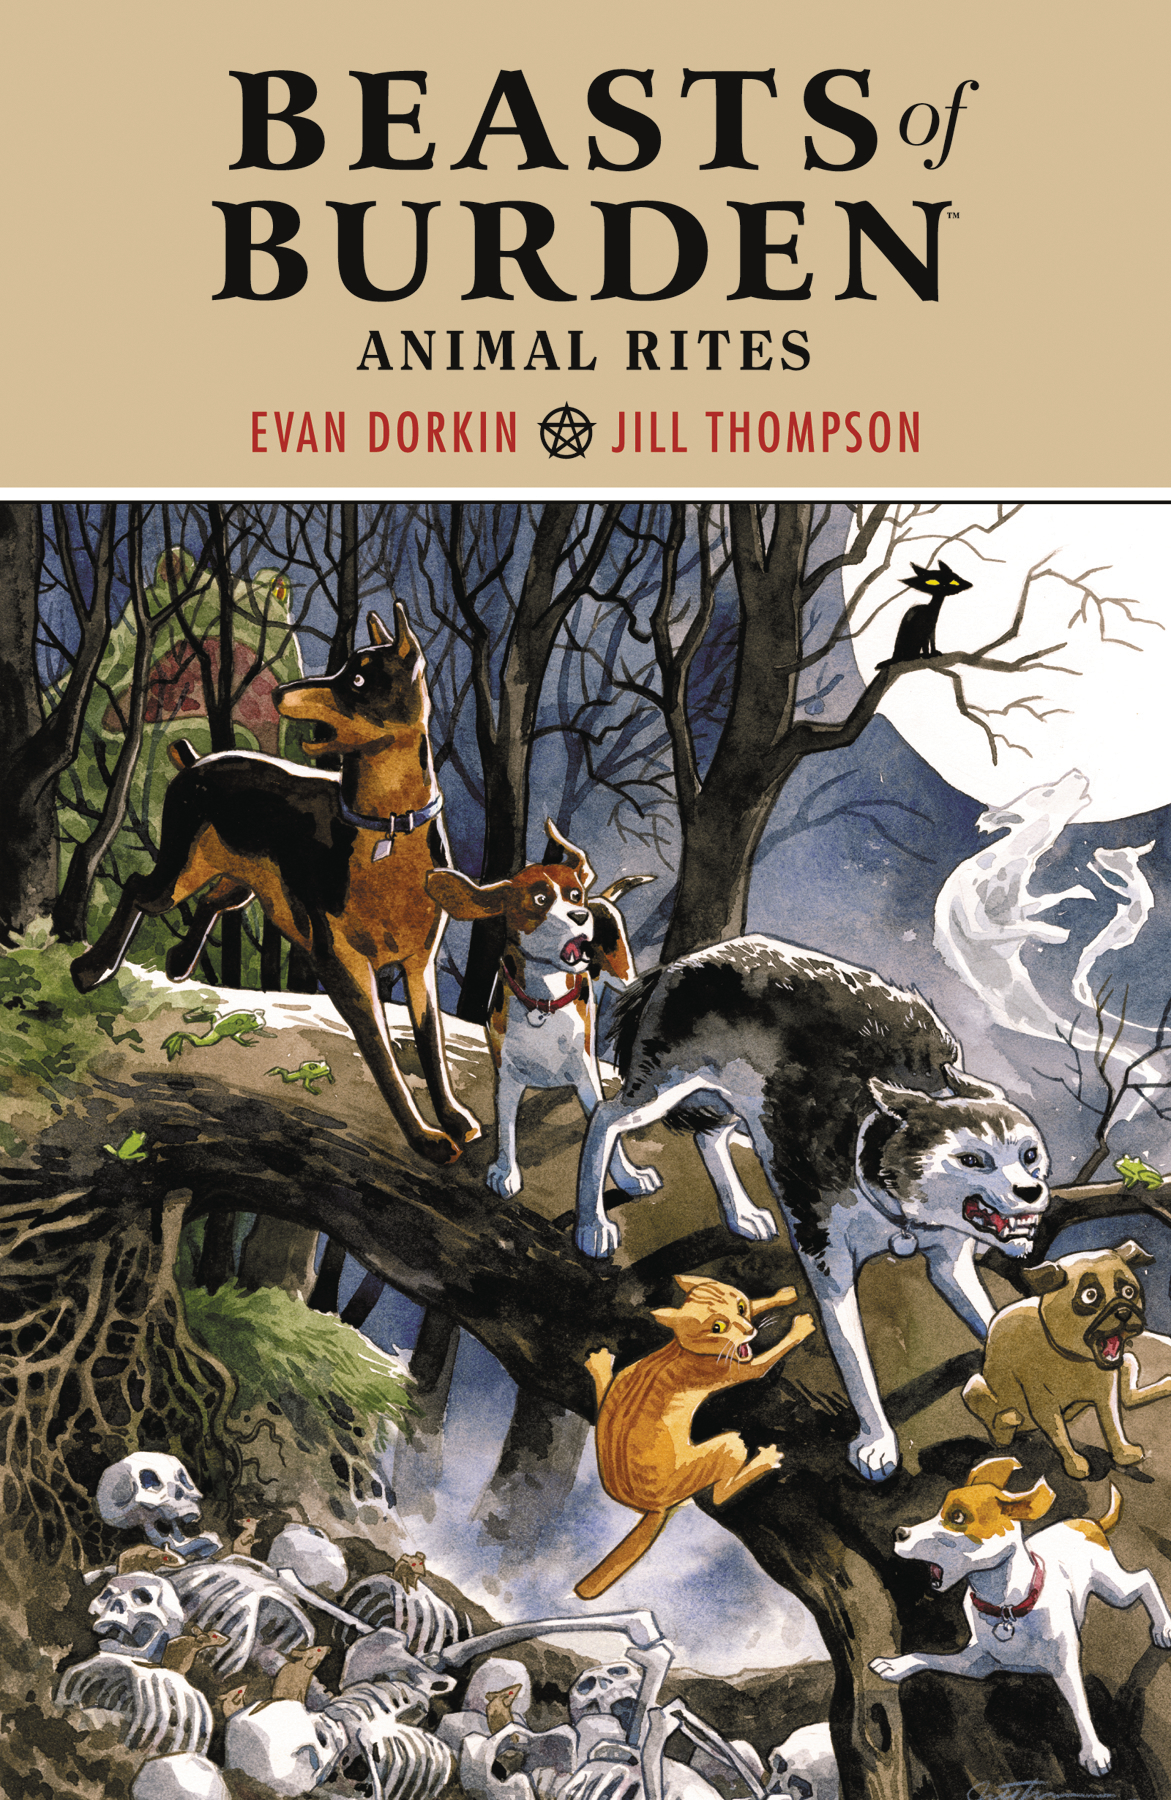 Beasts of Burden Animal Rites Graphic Novel